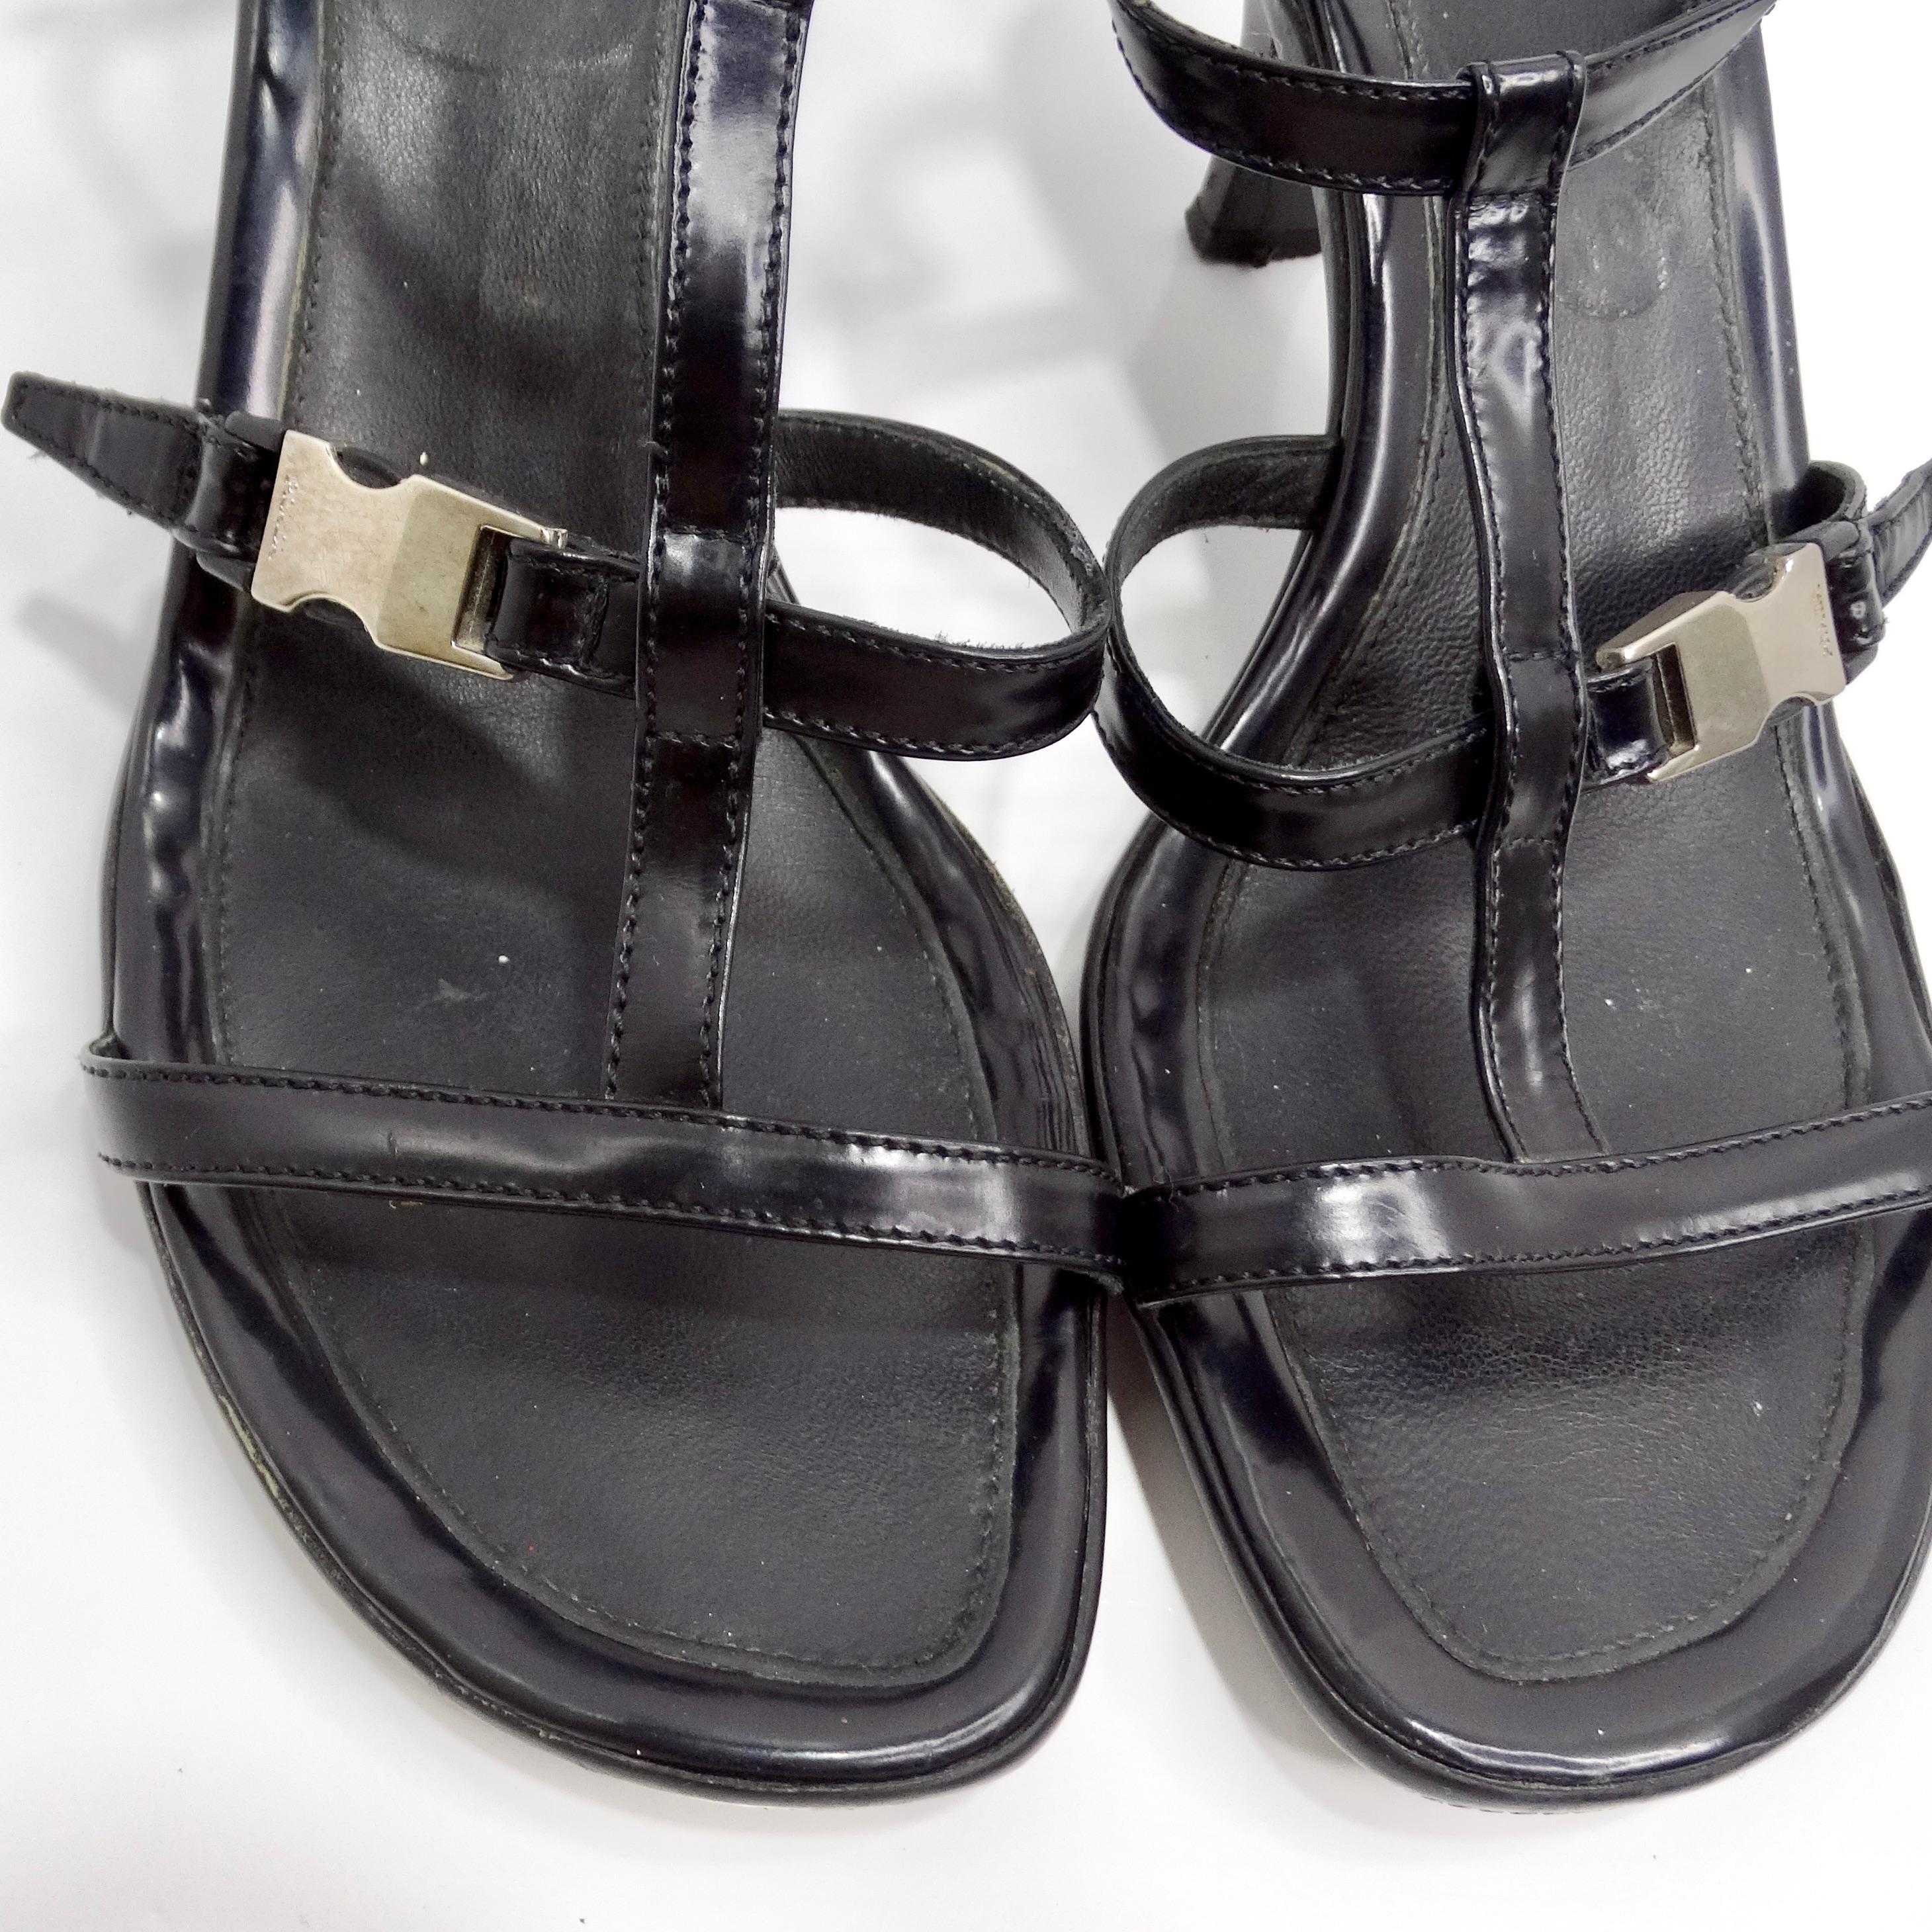 Voici l'élégance intemporelle des Prada Vintage Black Leather Strappy Buckle Kitten Heels, une option de chaussure chic et polyvalente, parfaite pour toutes les occasions. Fabriquées en cuir noir luxueux, ces sandales sont dotées d'un design